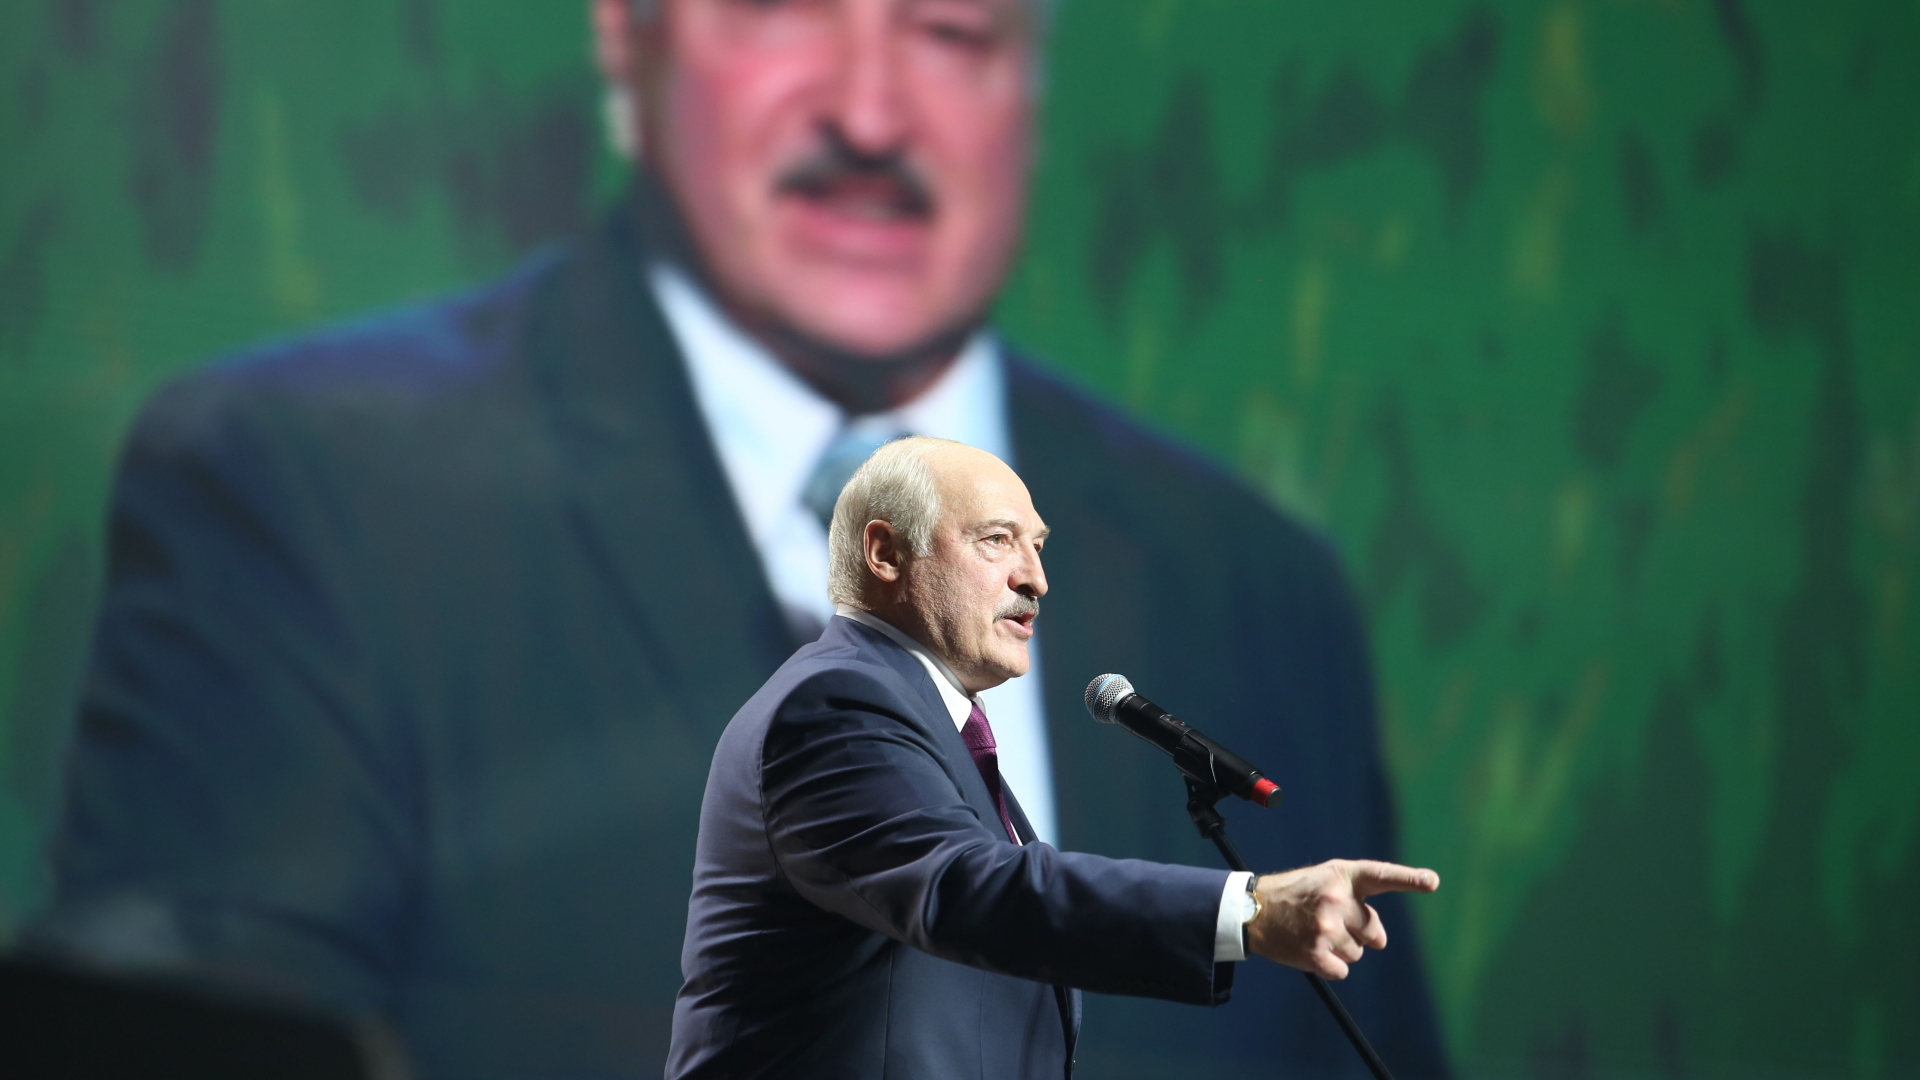 Belarus' Präsident Lukaschenk spricht auf einer Veranstaltung im September 2020 in Minsk